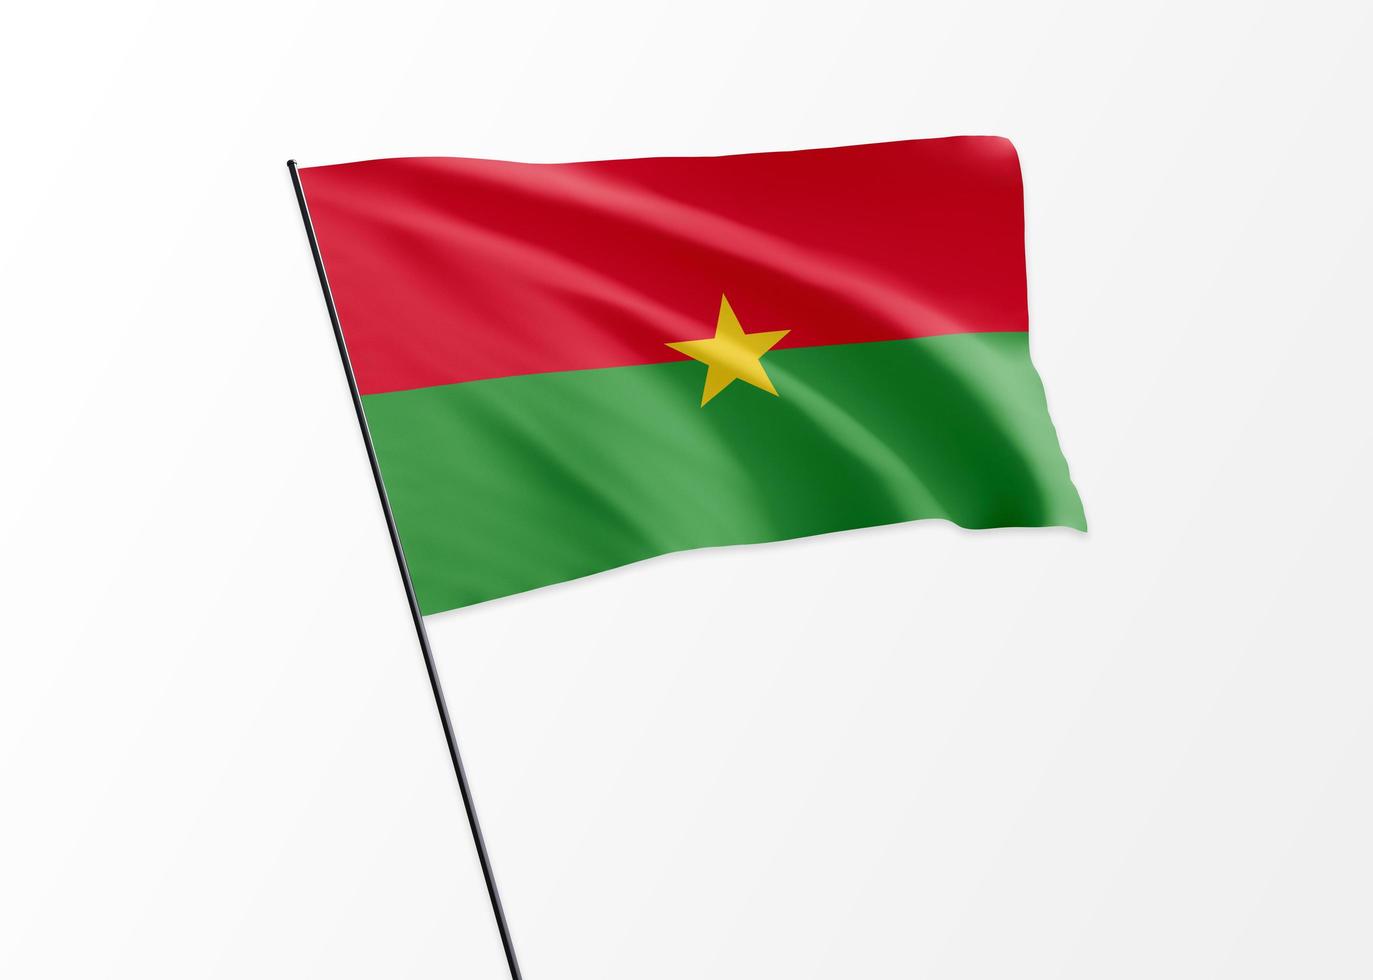 Burkina Faso Flagge hoch im isolierten Hintergrund fliegen Burkina Faso Unabhängigkeitstag. Weltnationalflaggensammlung der Illustration 3d foto